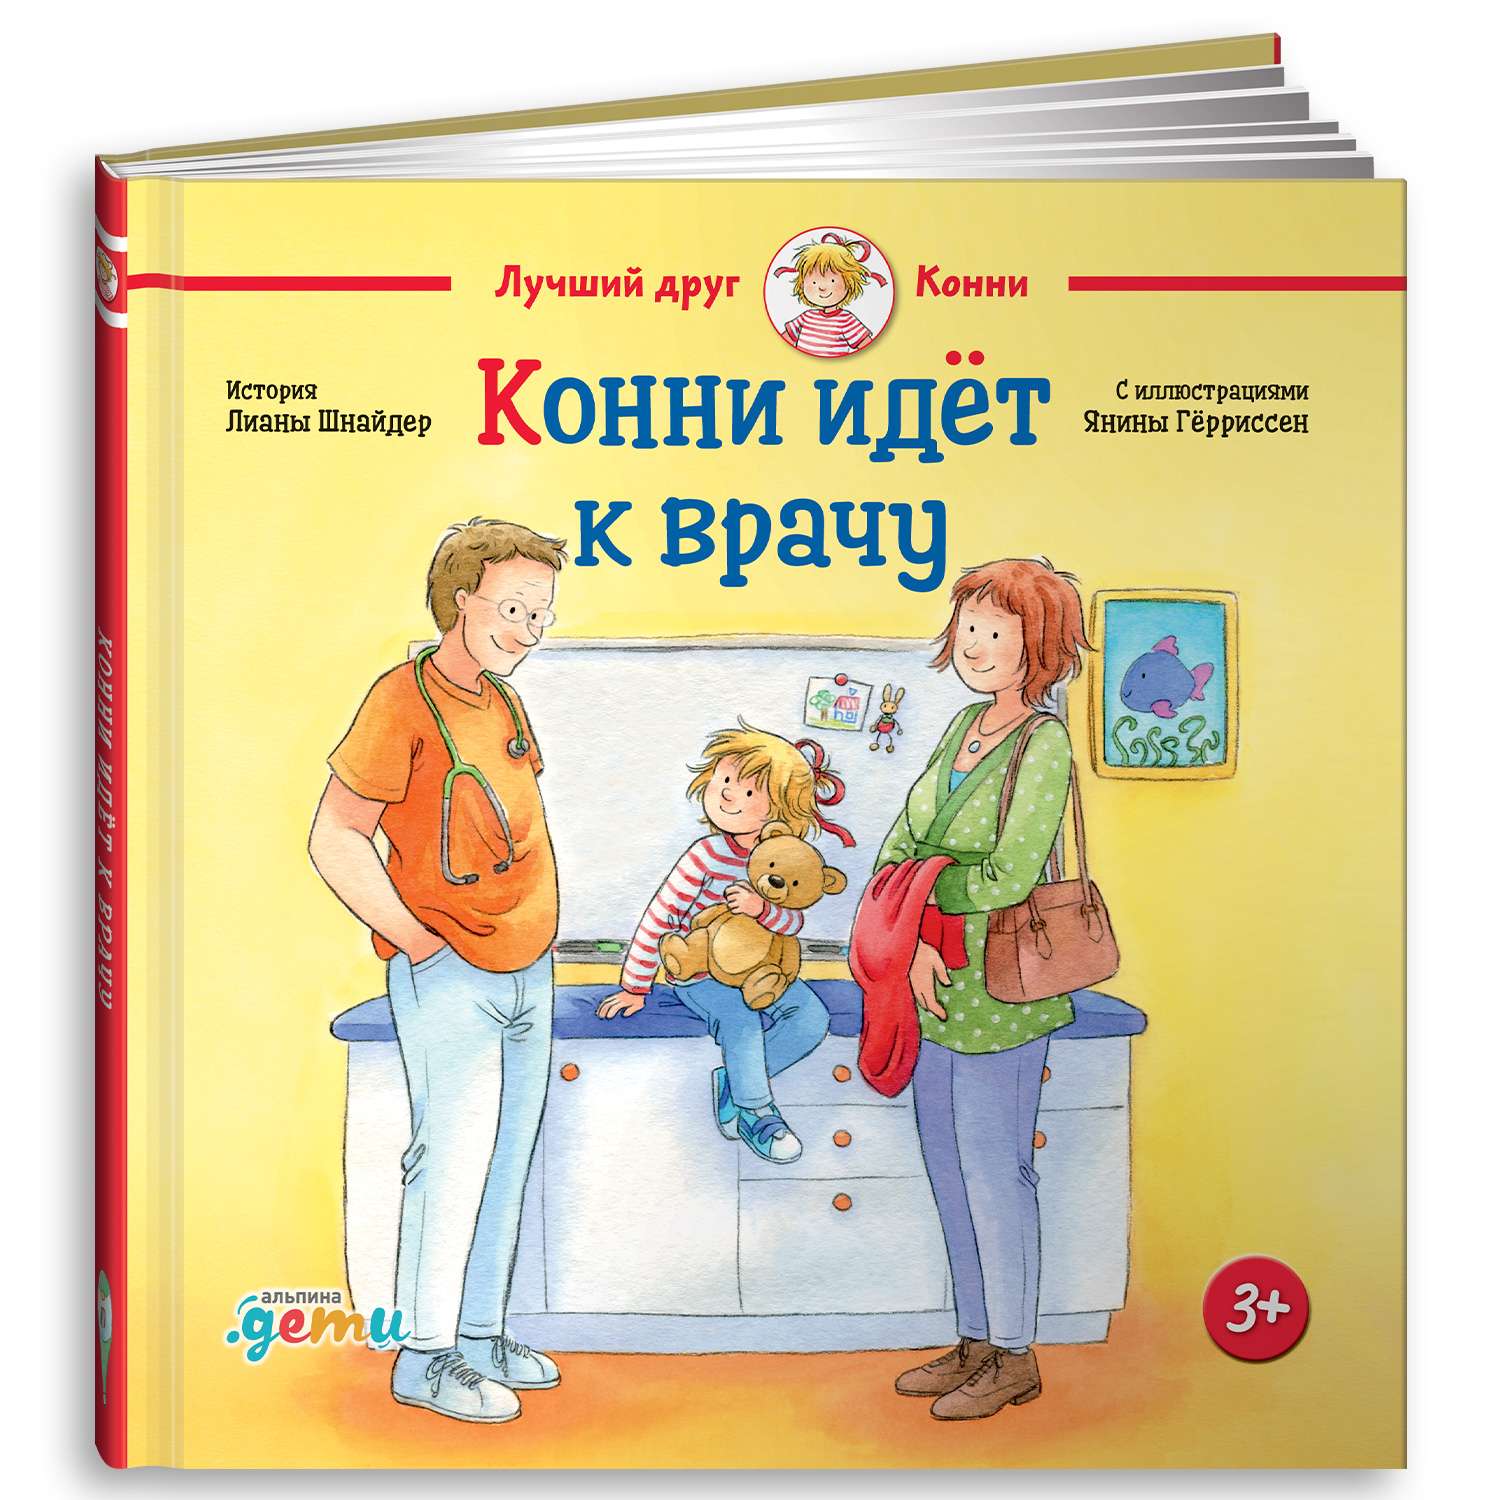 В. Селюминов: Я открываю храм. Познавательная книга для детей и их родителей